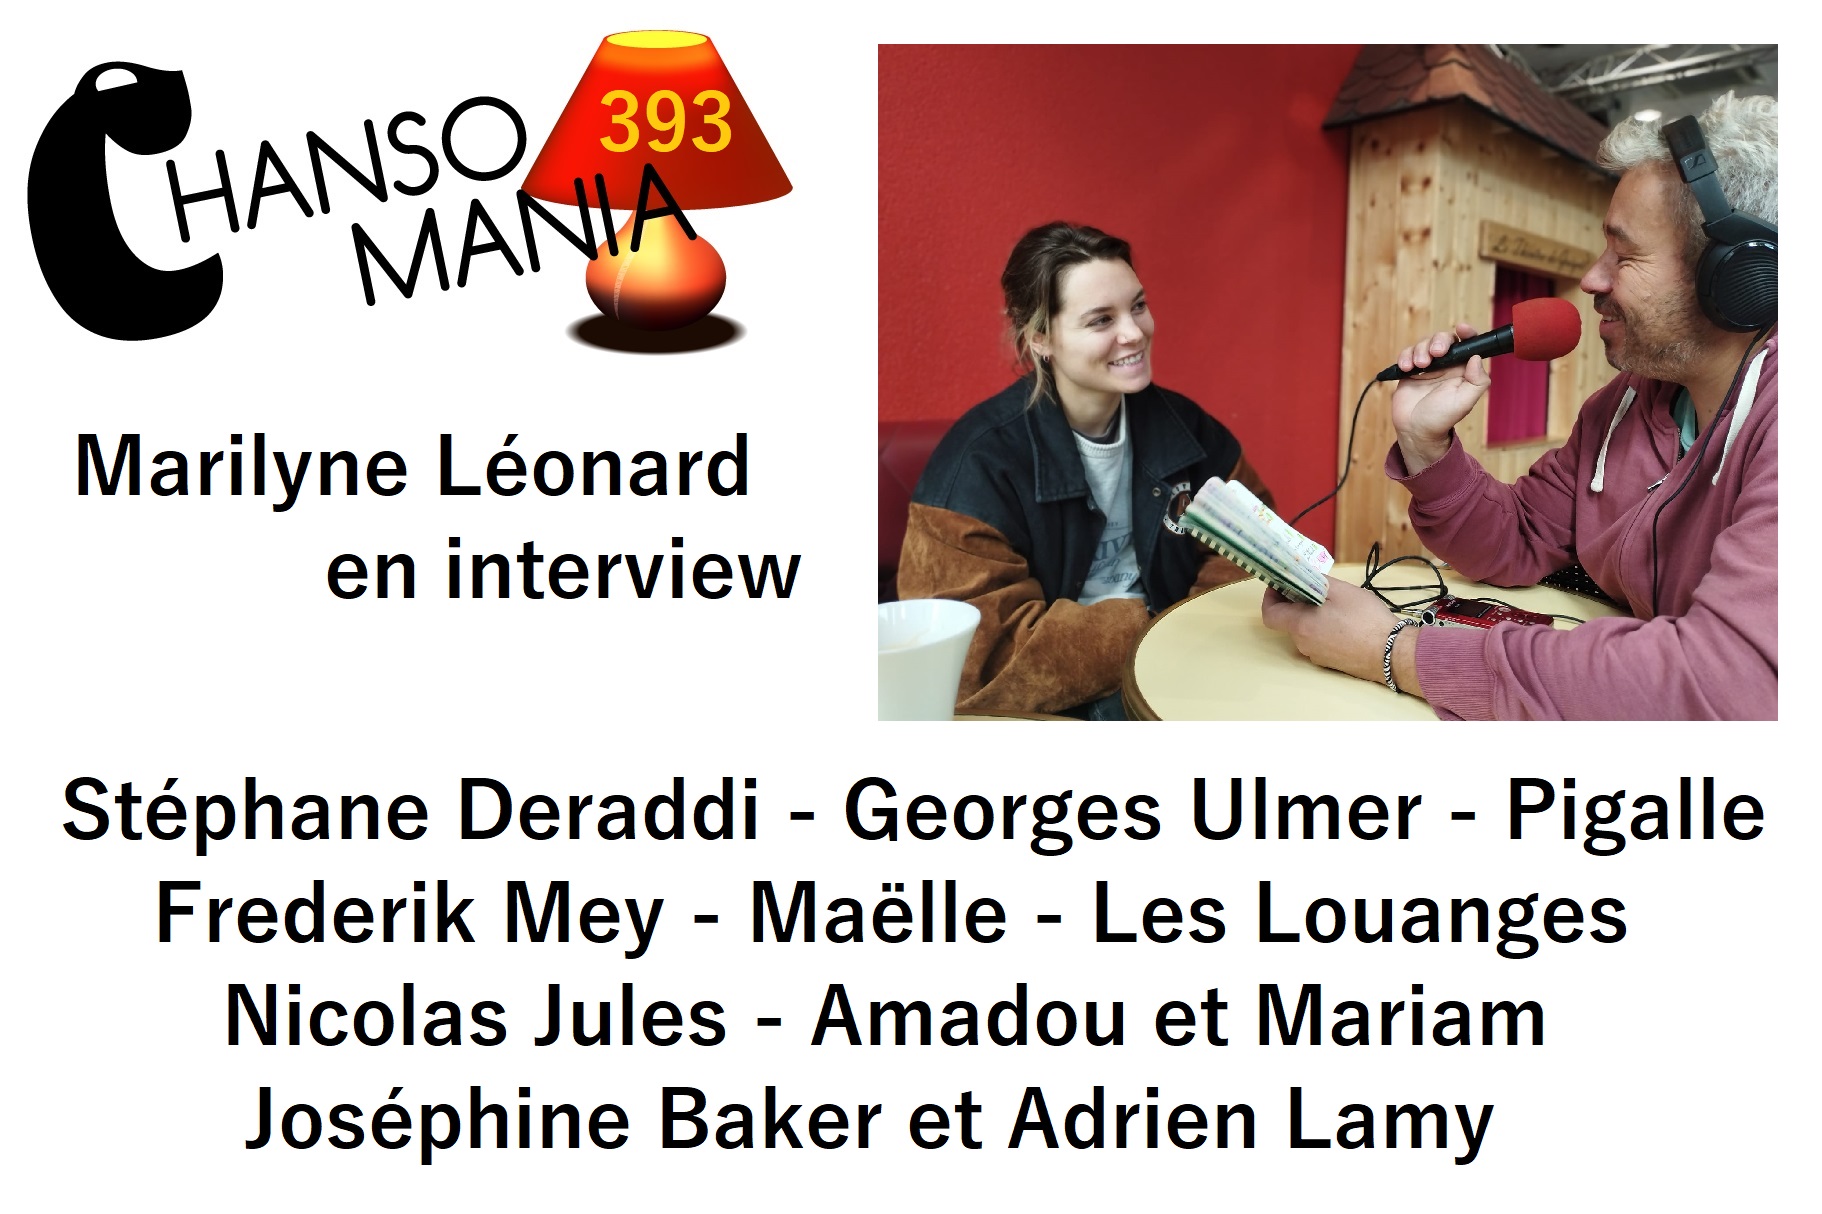 Chansomania 393, Marilyne Léonard en interview, et plein de chansons